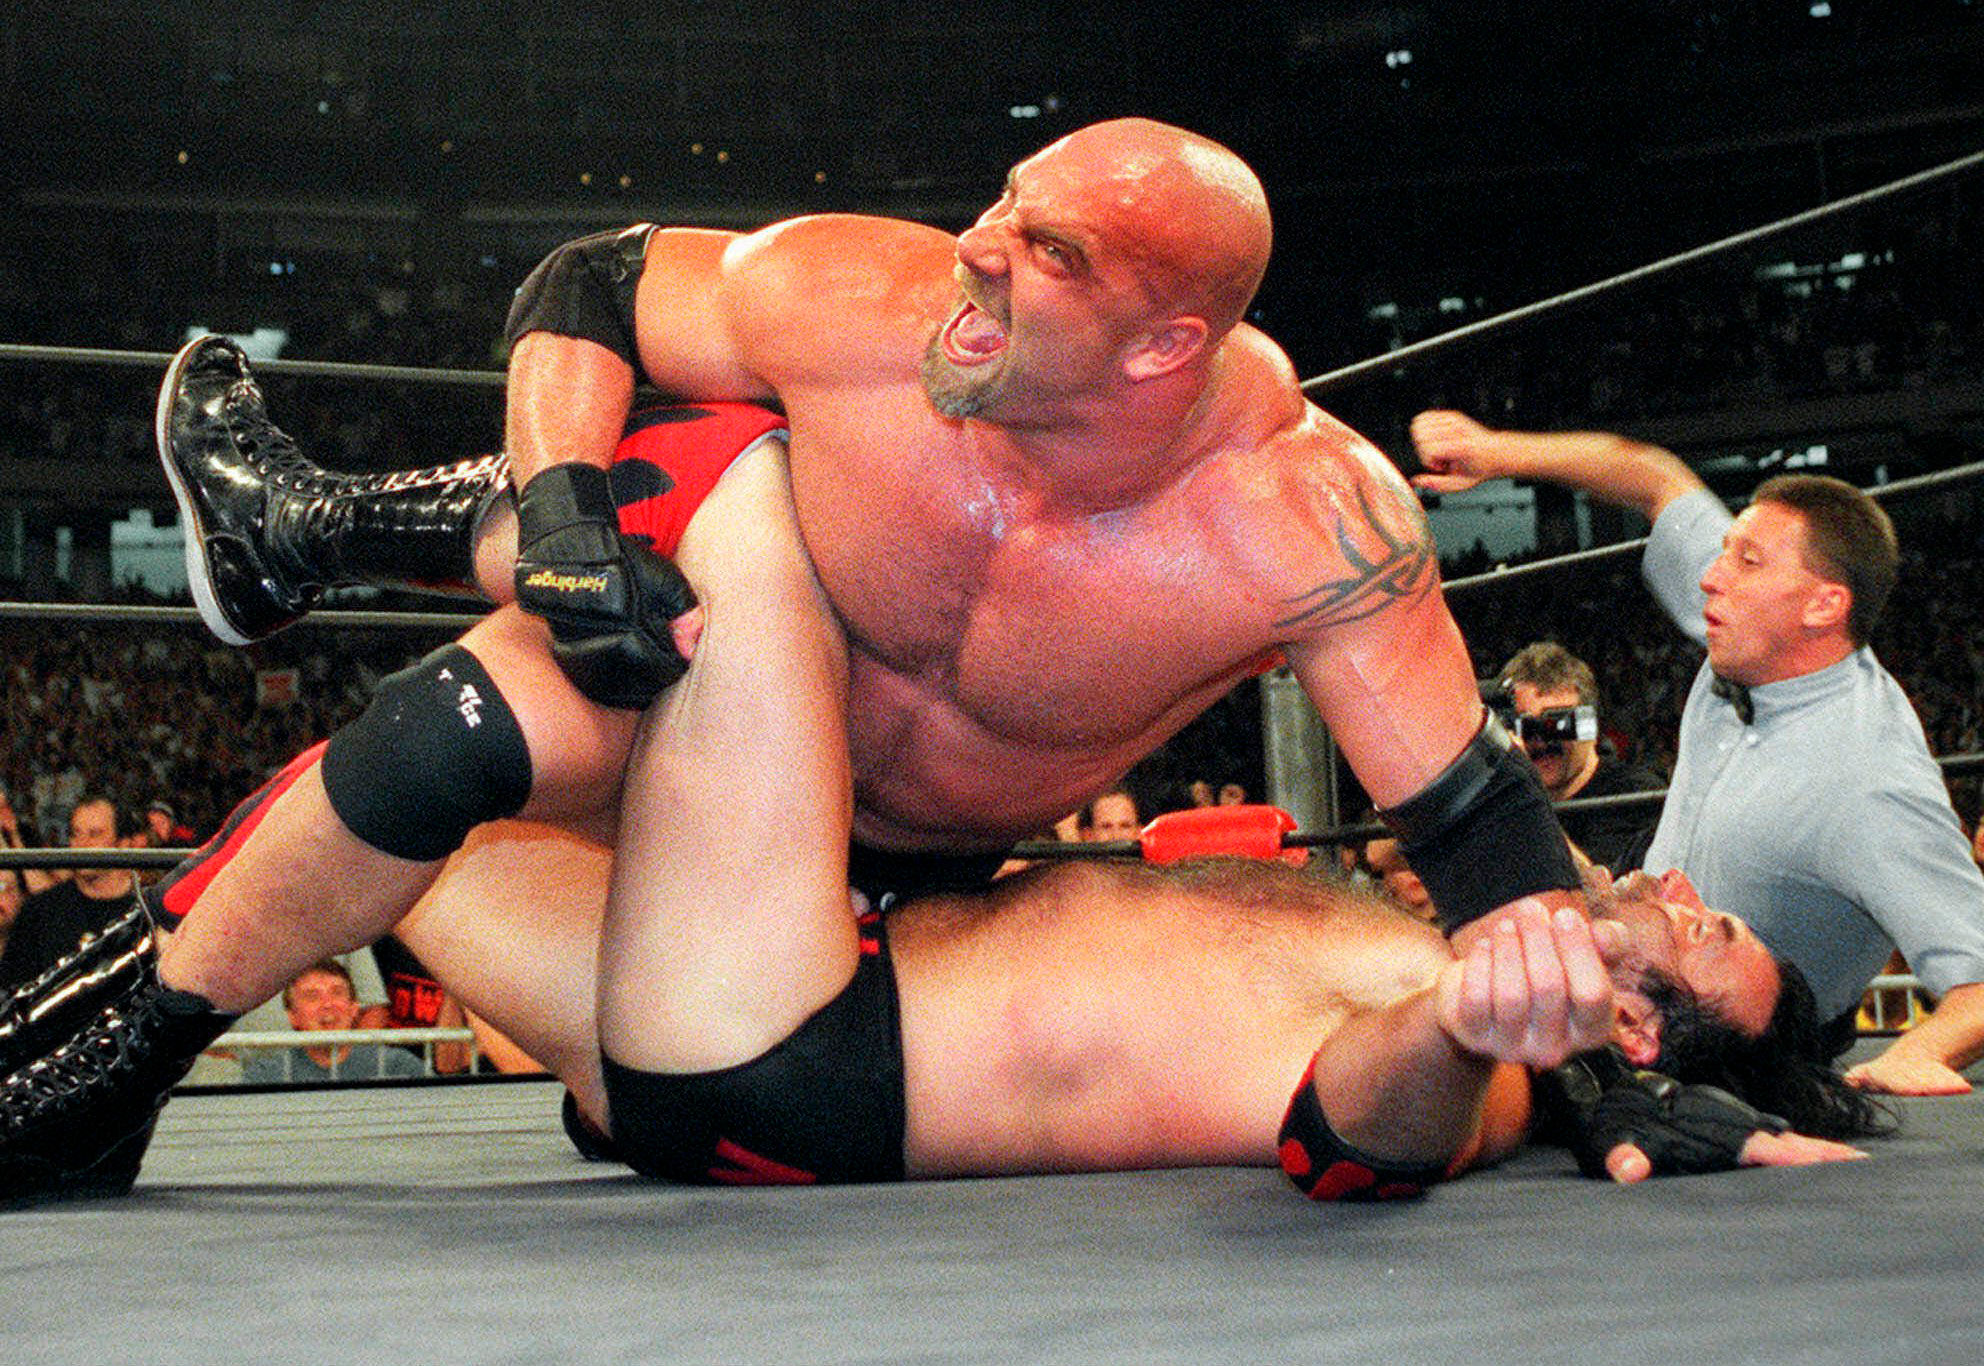 WWE star Goldberg, 54, wrestles for love of son at SummerSlam